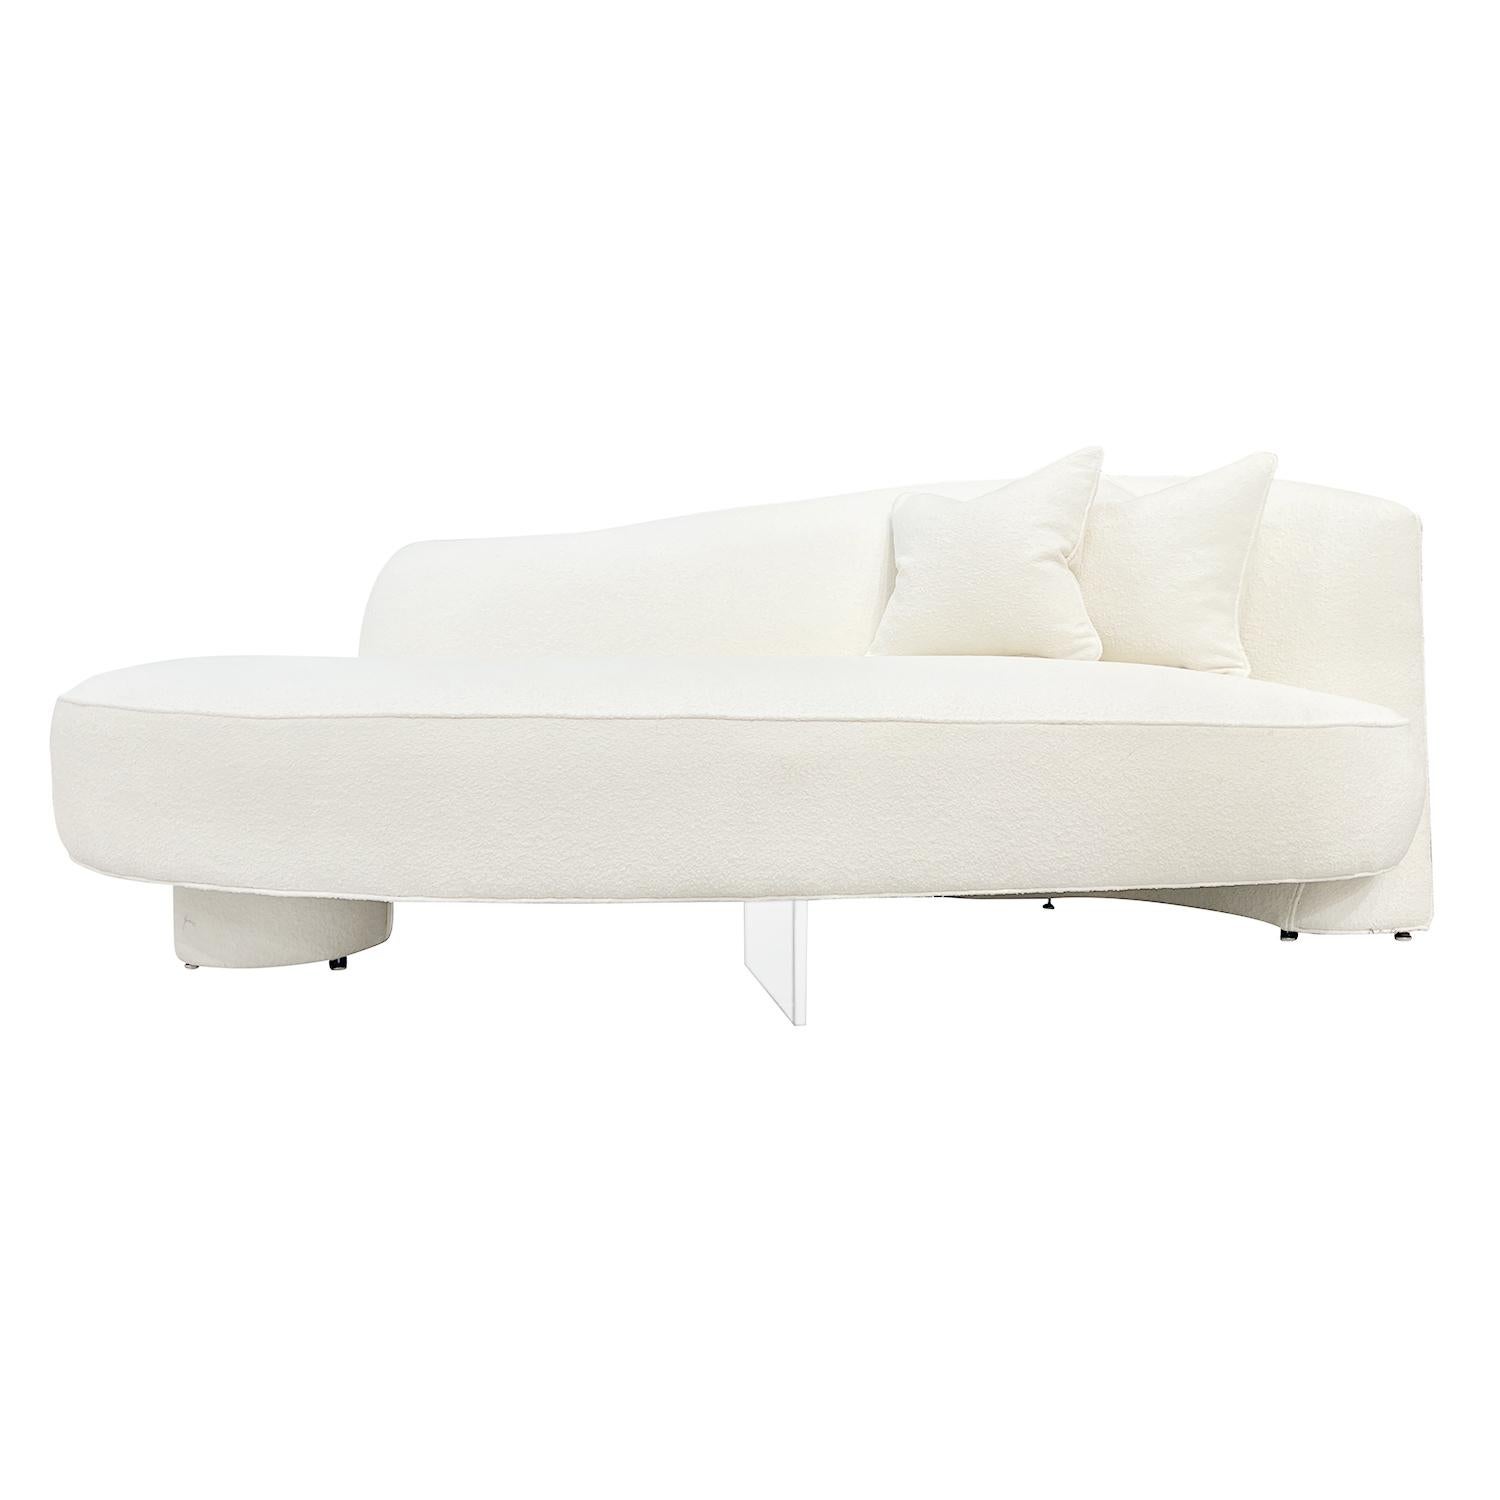 Ein Vintage Mid-Century modernes amerikanisches viersitziges Serpentine Sofa mit zwei Kissen, entworfen von Vladimir Kagan und produziert von Directional in gutem Zustand. Die Rückenlehne des skulpturalen Sofas, Canapé, ist gewölbt und ruht auf zwei